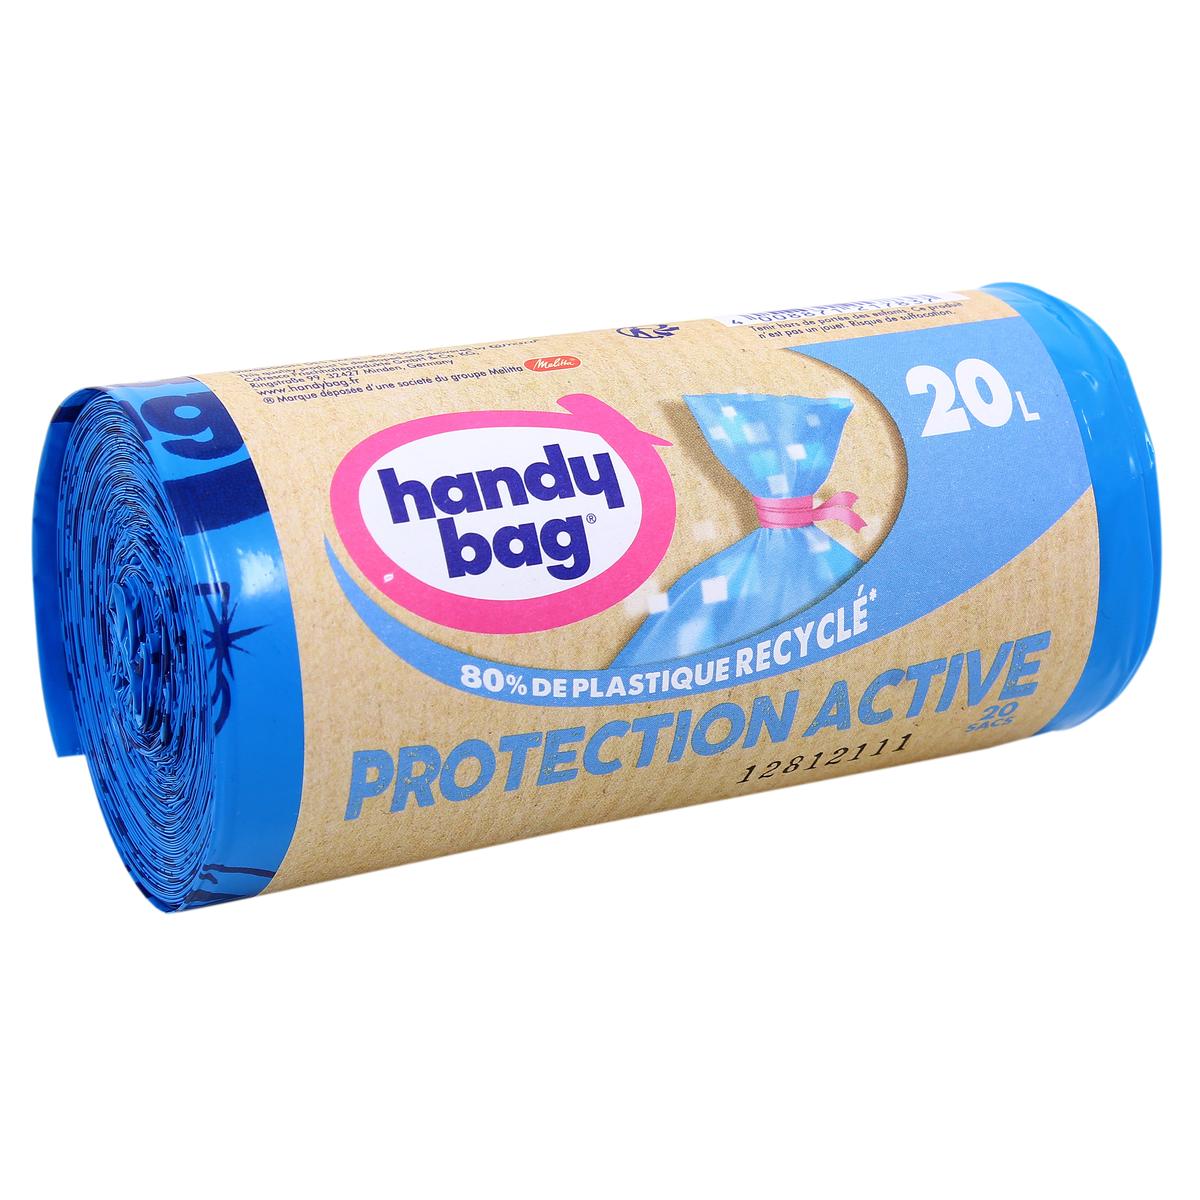 Achat Handy Bag Sacs poubelle 20L - Protection Active, 20 sacs de 20L